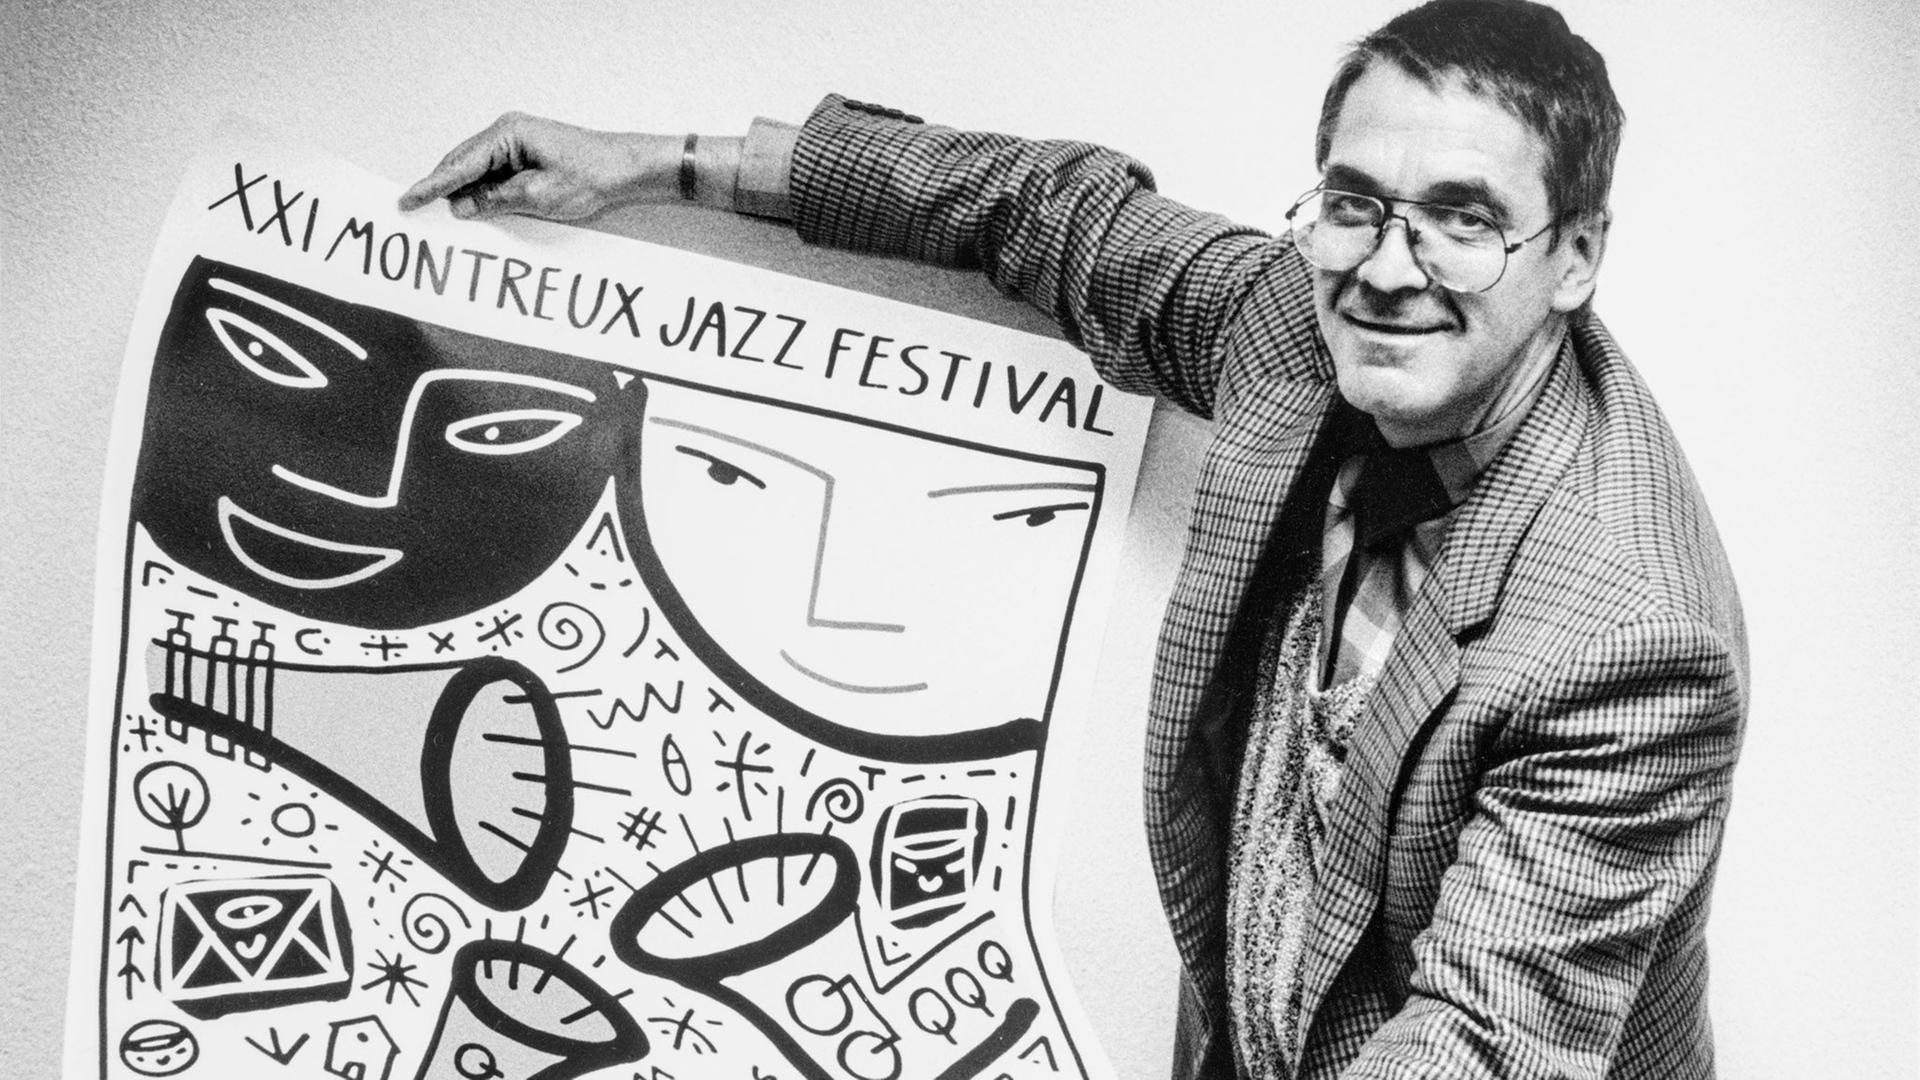 Claude Nobs hält auf dem Schwarz.Weiß-Bild das Plakat zum 21. Montreux Jazz Festival in den Händen und zeigt es in die Kamera. Er trägt das Haar kurz und hat eine Brille.